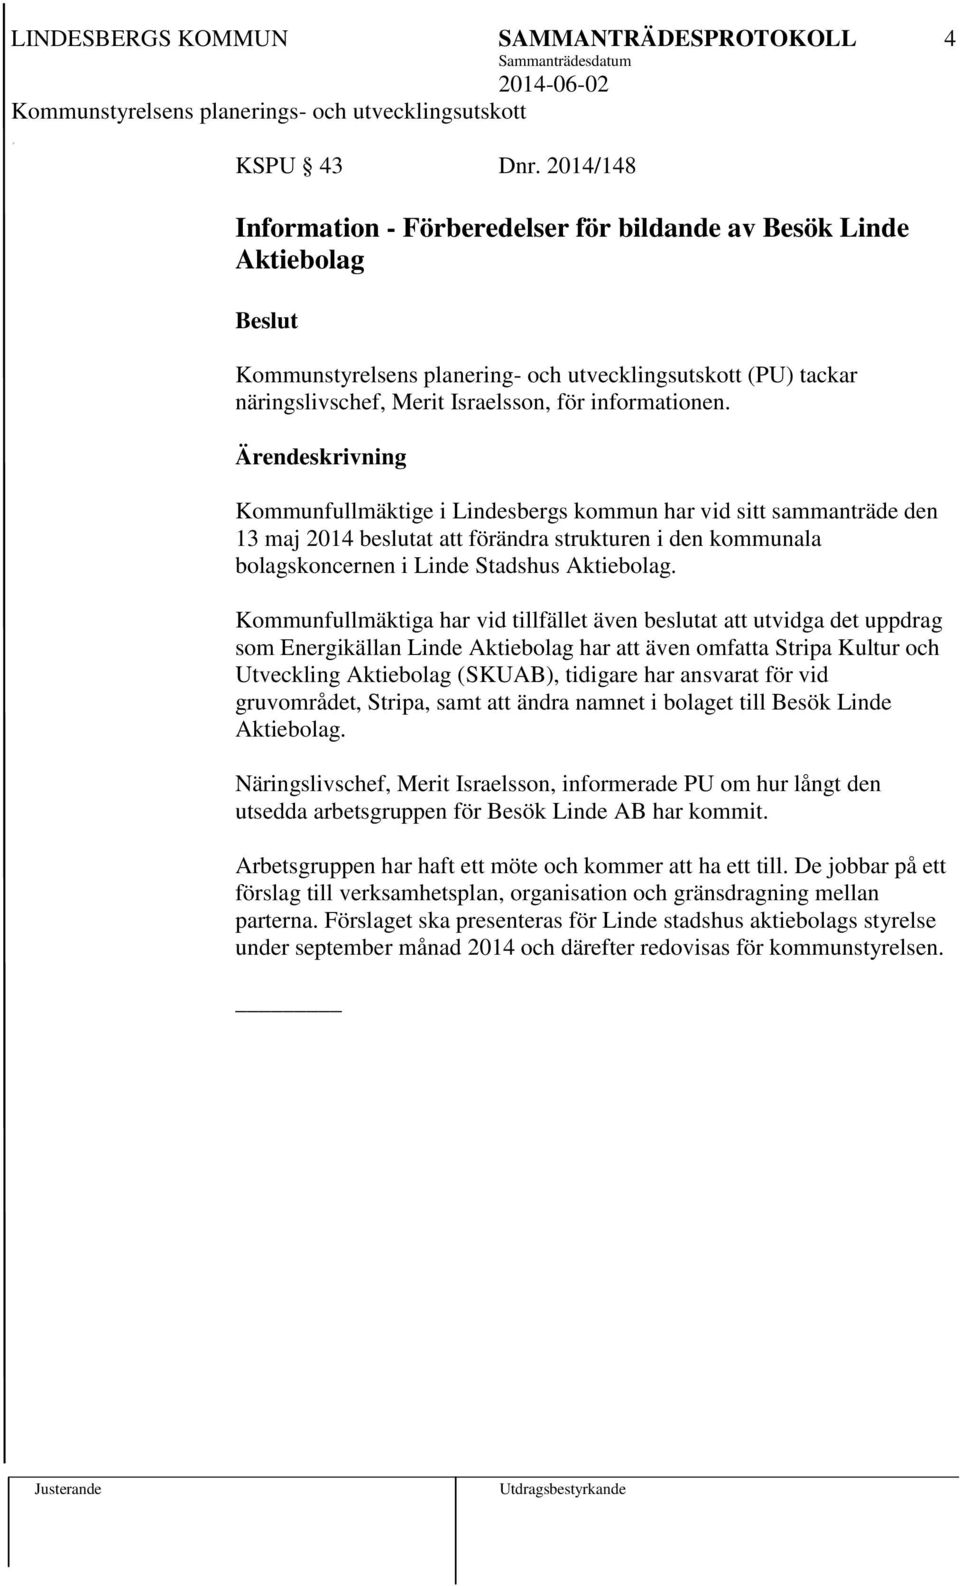 Ärendeskrivning Kommunfullmäktige i Lindesbergs kommun har vid sitt sammanträde den 13 maj 2014 beslutat att förändra strukturen i den kommunala bolagskoncernen i Linde Stadshus Aktiebolag.